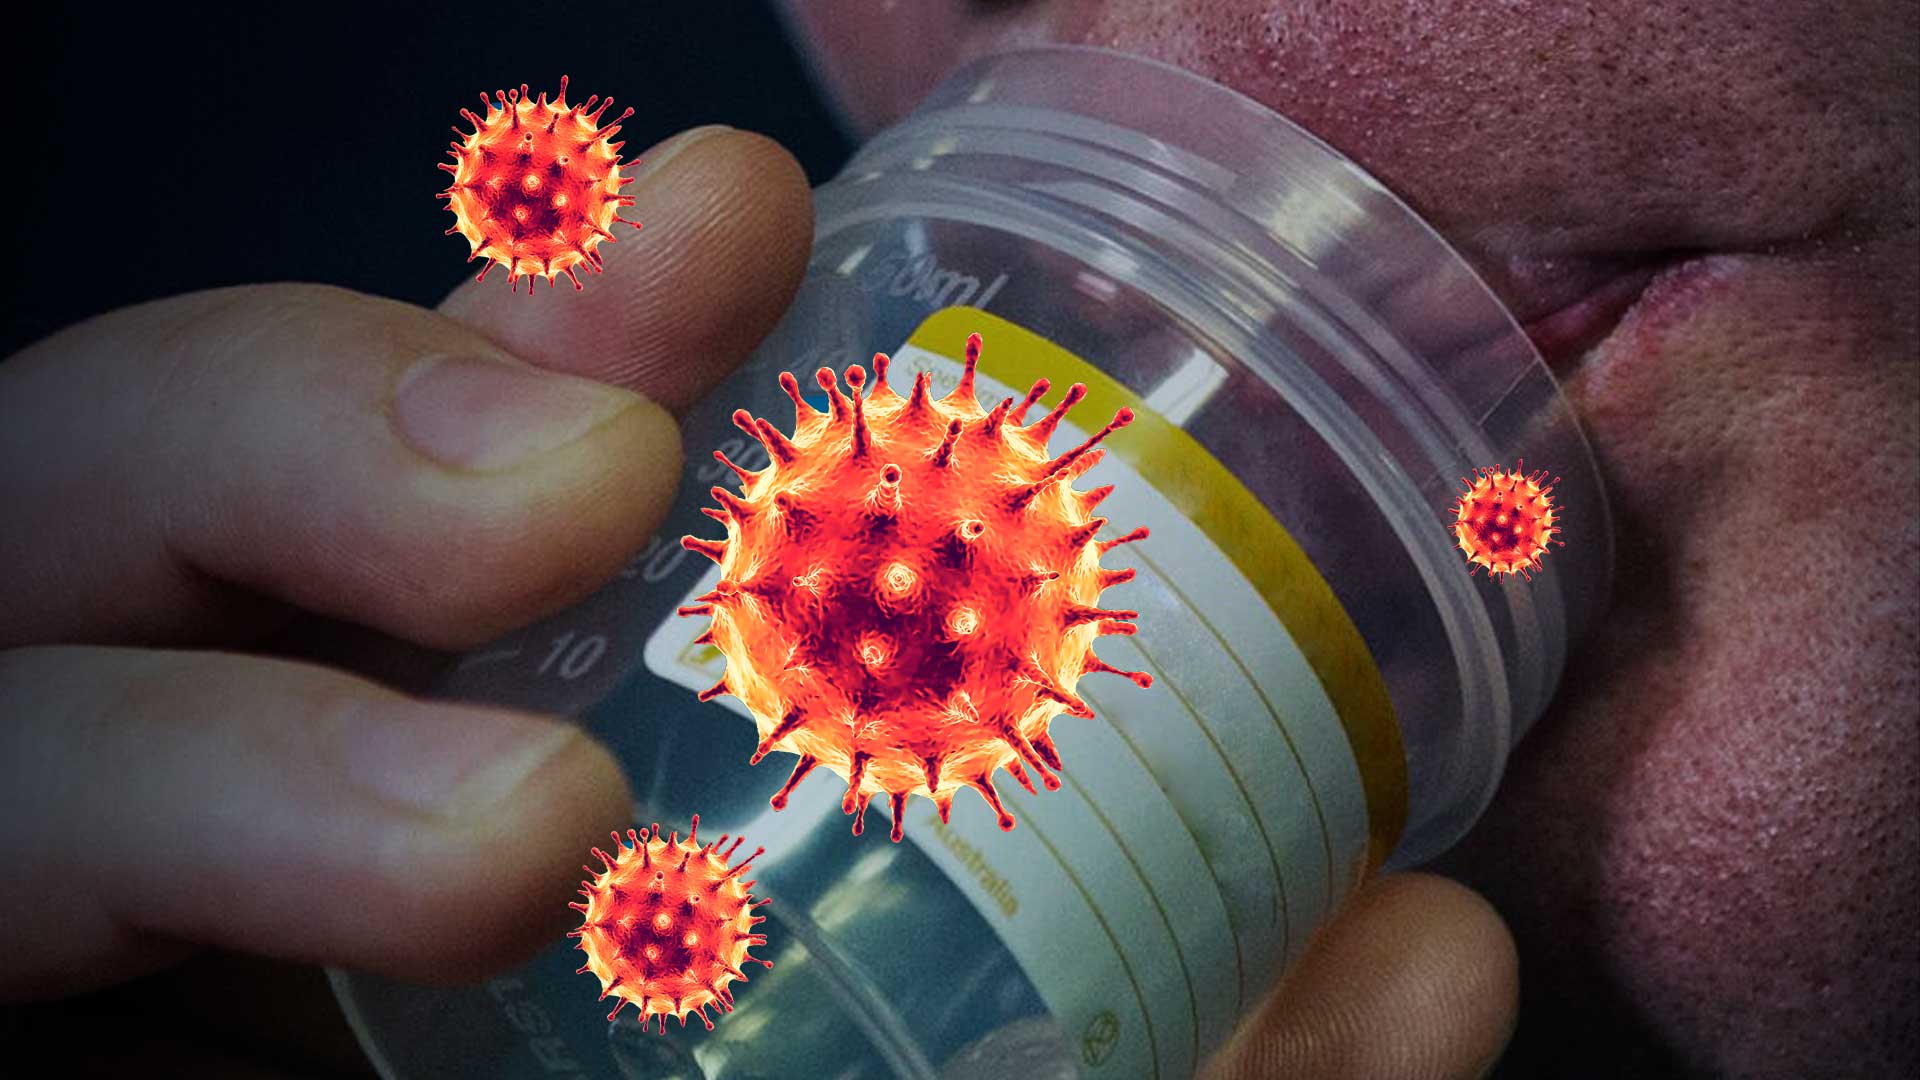 El equipo de la OMS en China considera muy improbable que el coronavirus saliera de un laboratorio y apunta a su origen animal